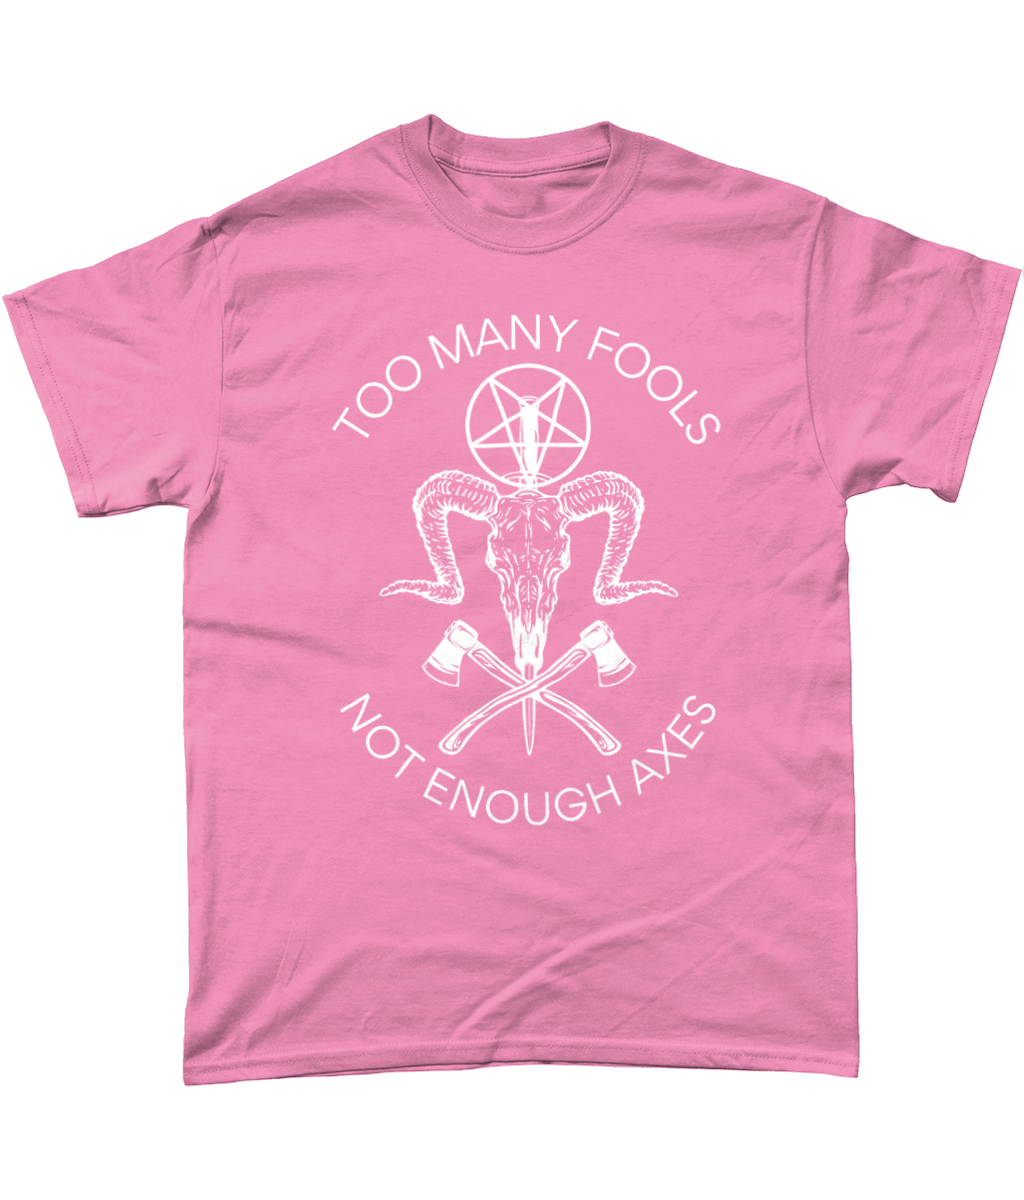 Too many fools not enough axes Pagan t-shirt